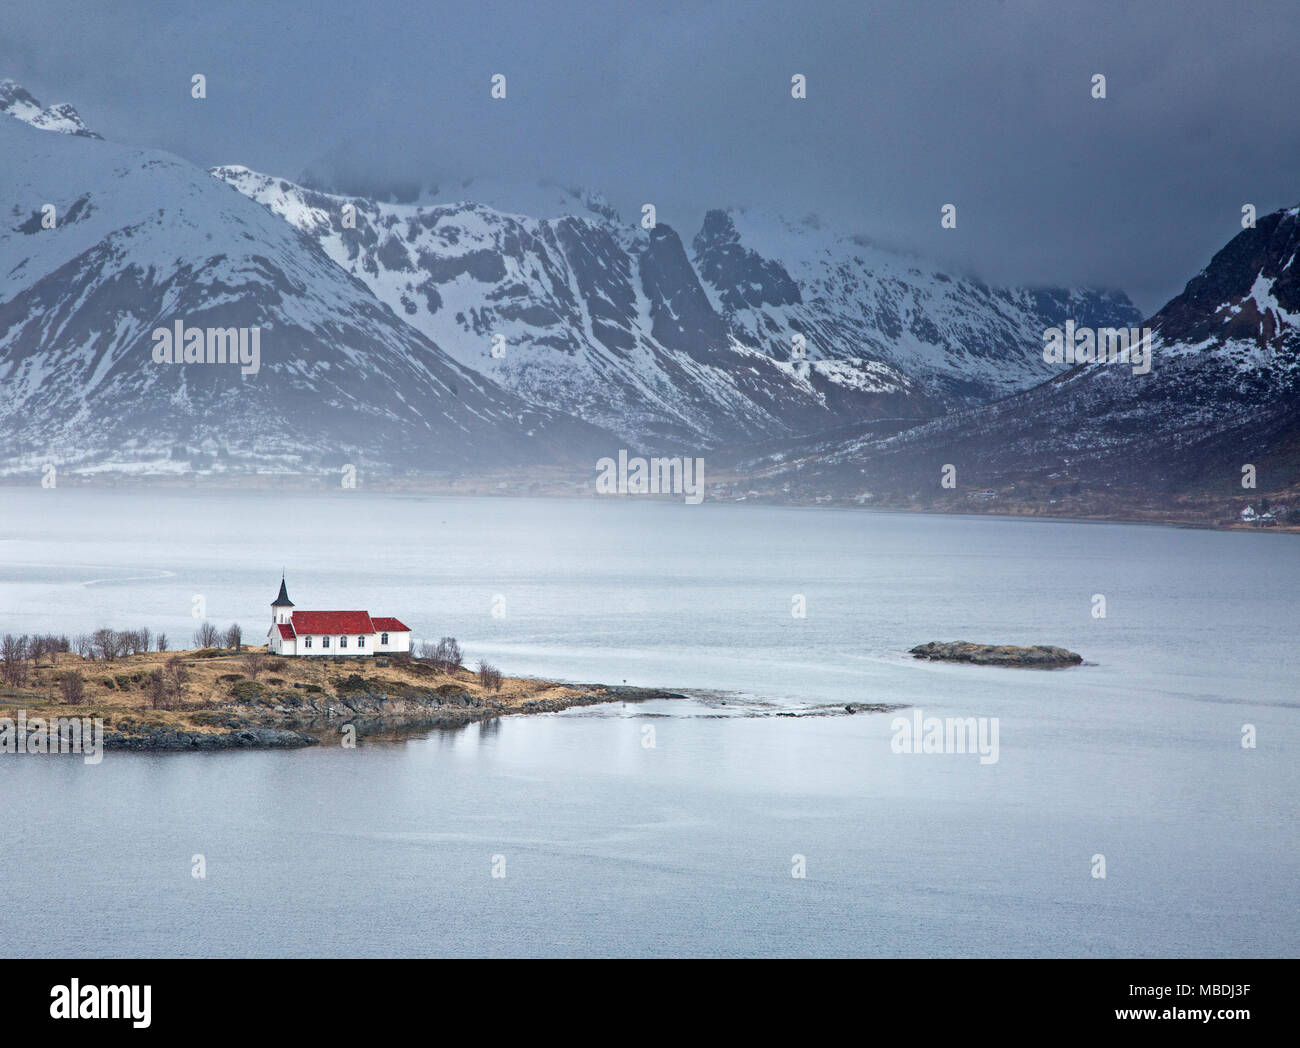 Chiesa remoto lungo il fiordo waterfront sotto le montagne nevose, Sildpoinesnet, Austvagoya, Norvegia Foto Stock